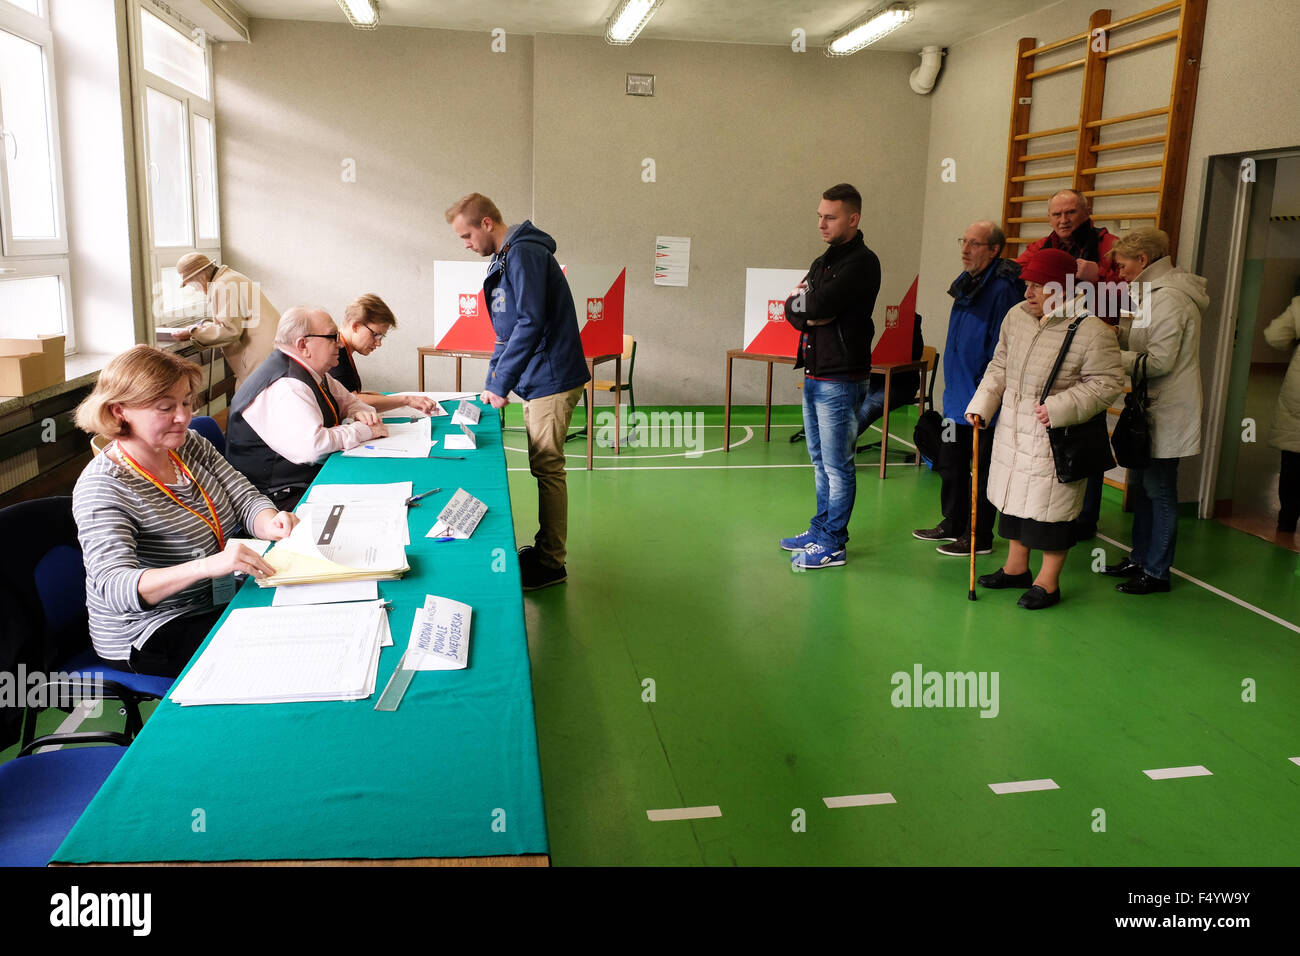 Warschau, Polen - Sonntag, 25. Oktober 2015 - Parlamentswahlen nationalen Parlamentswahlen - Wähler besuchen ein Wahl-Wahllokal in einer Schule in der Altstadt von Warschau. Das Foto zeigt Anwohner Registrierung abstimmen. Stockfoto